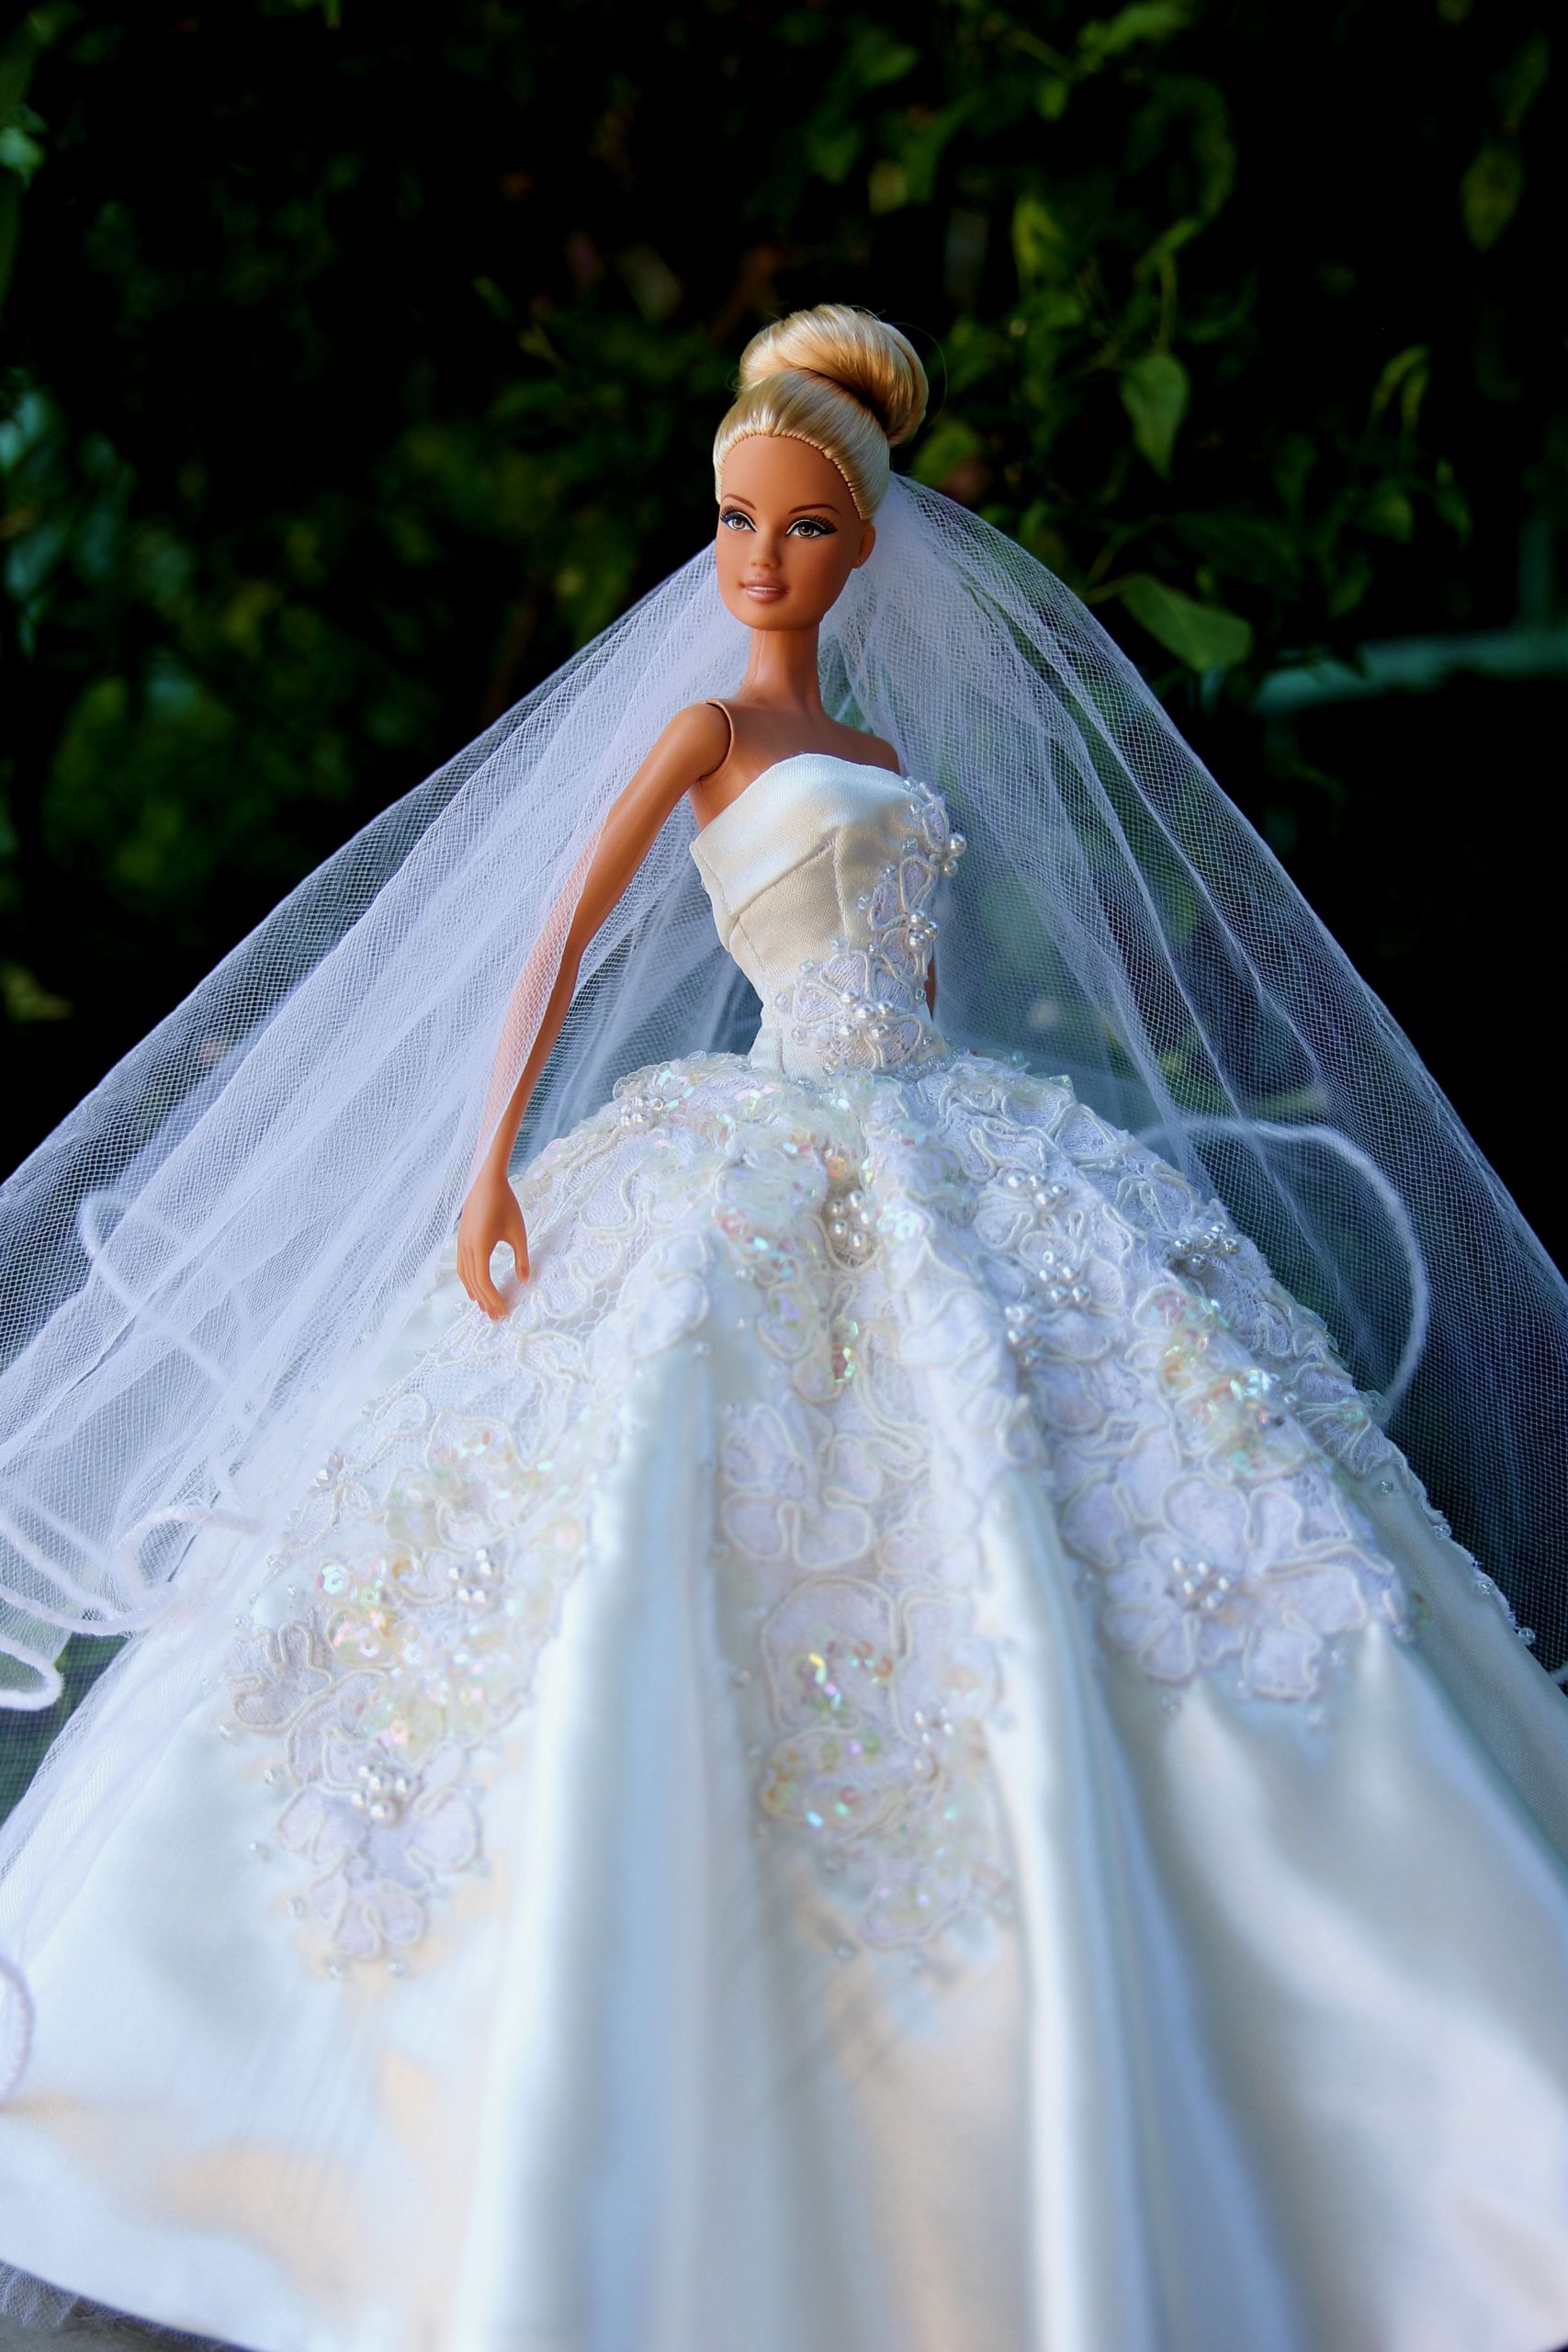 Barbie Wedding Dress
 1 3 by Barbie Dress 2014 via flickr